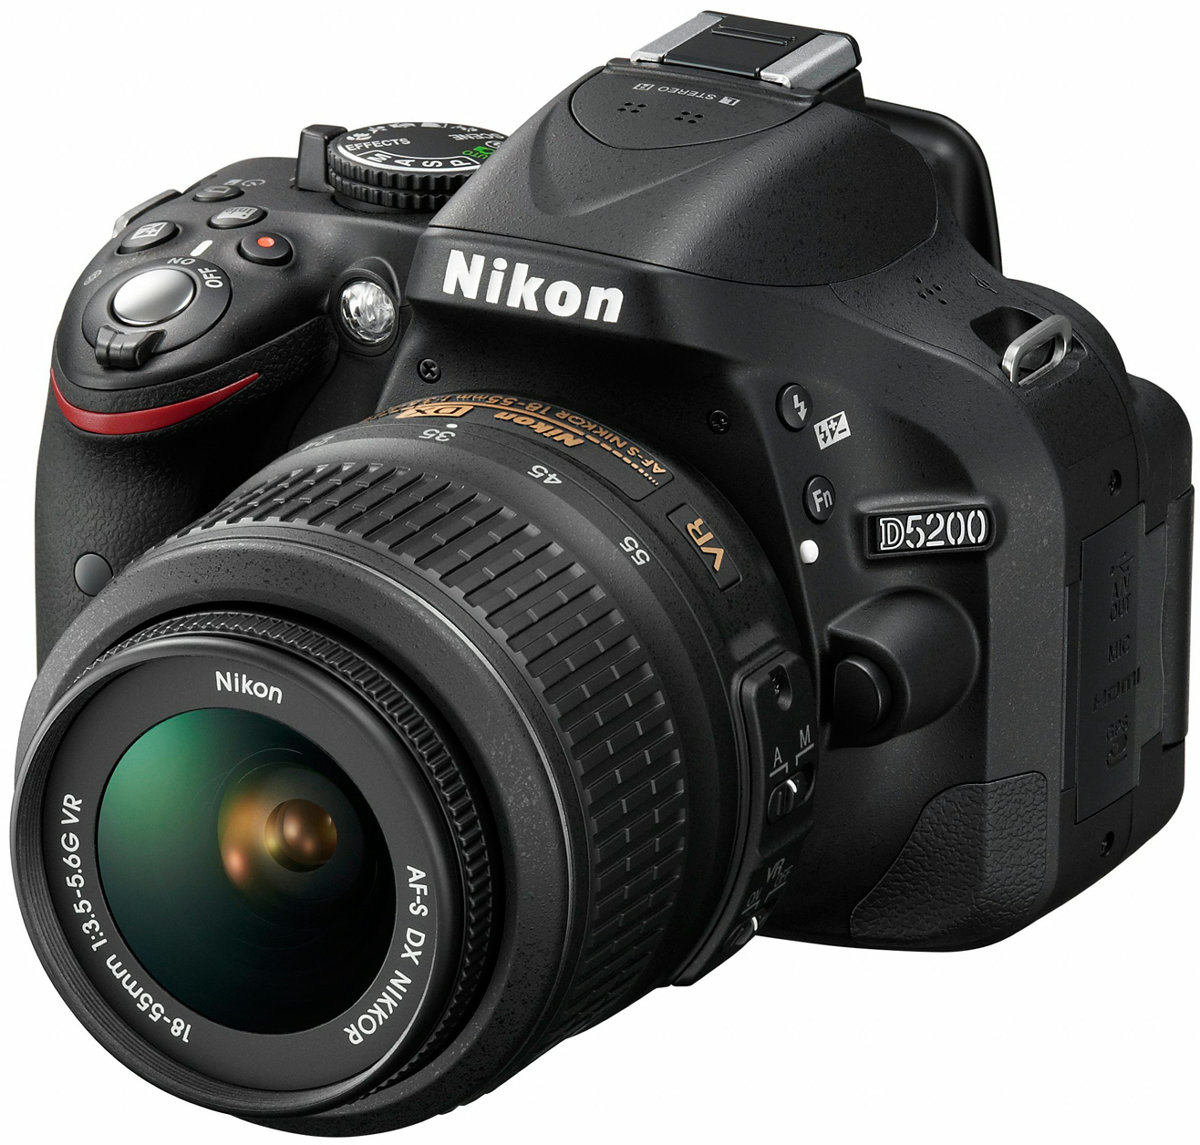 ニコンがデジタル一眼レフカメラのエントリーモデル「D5200」を12月に 